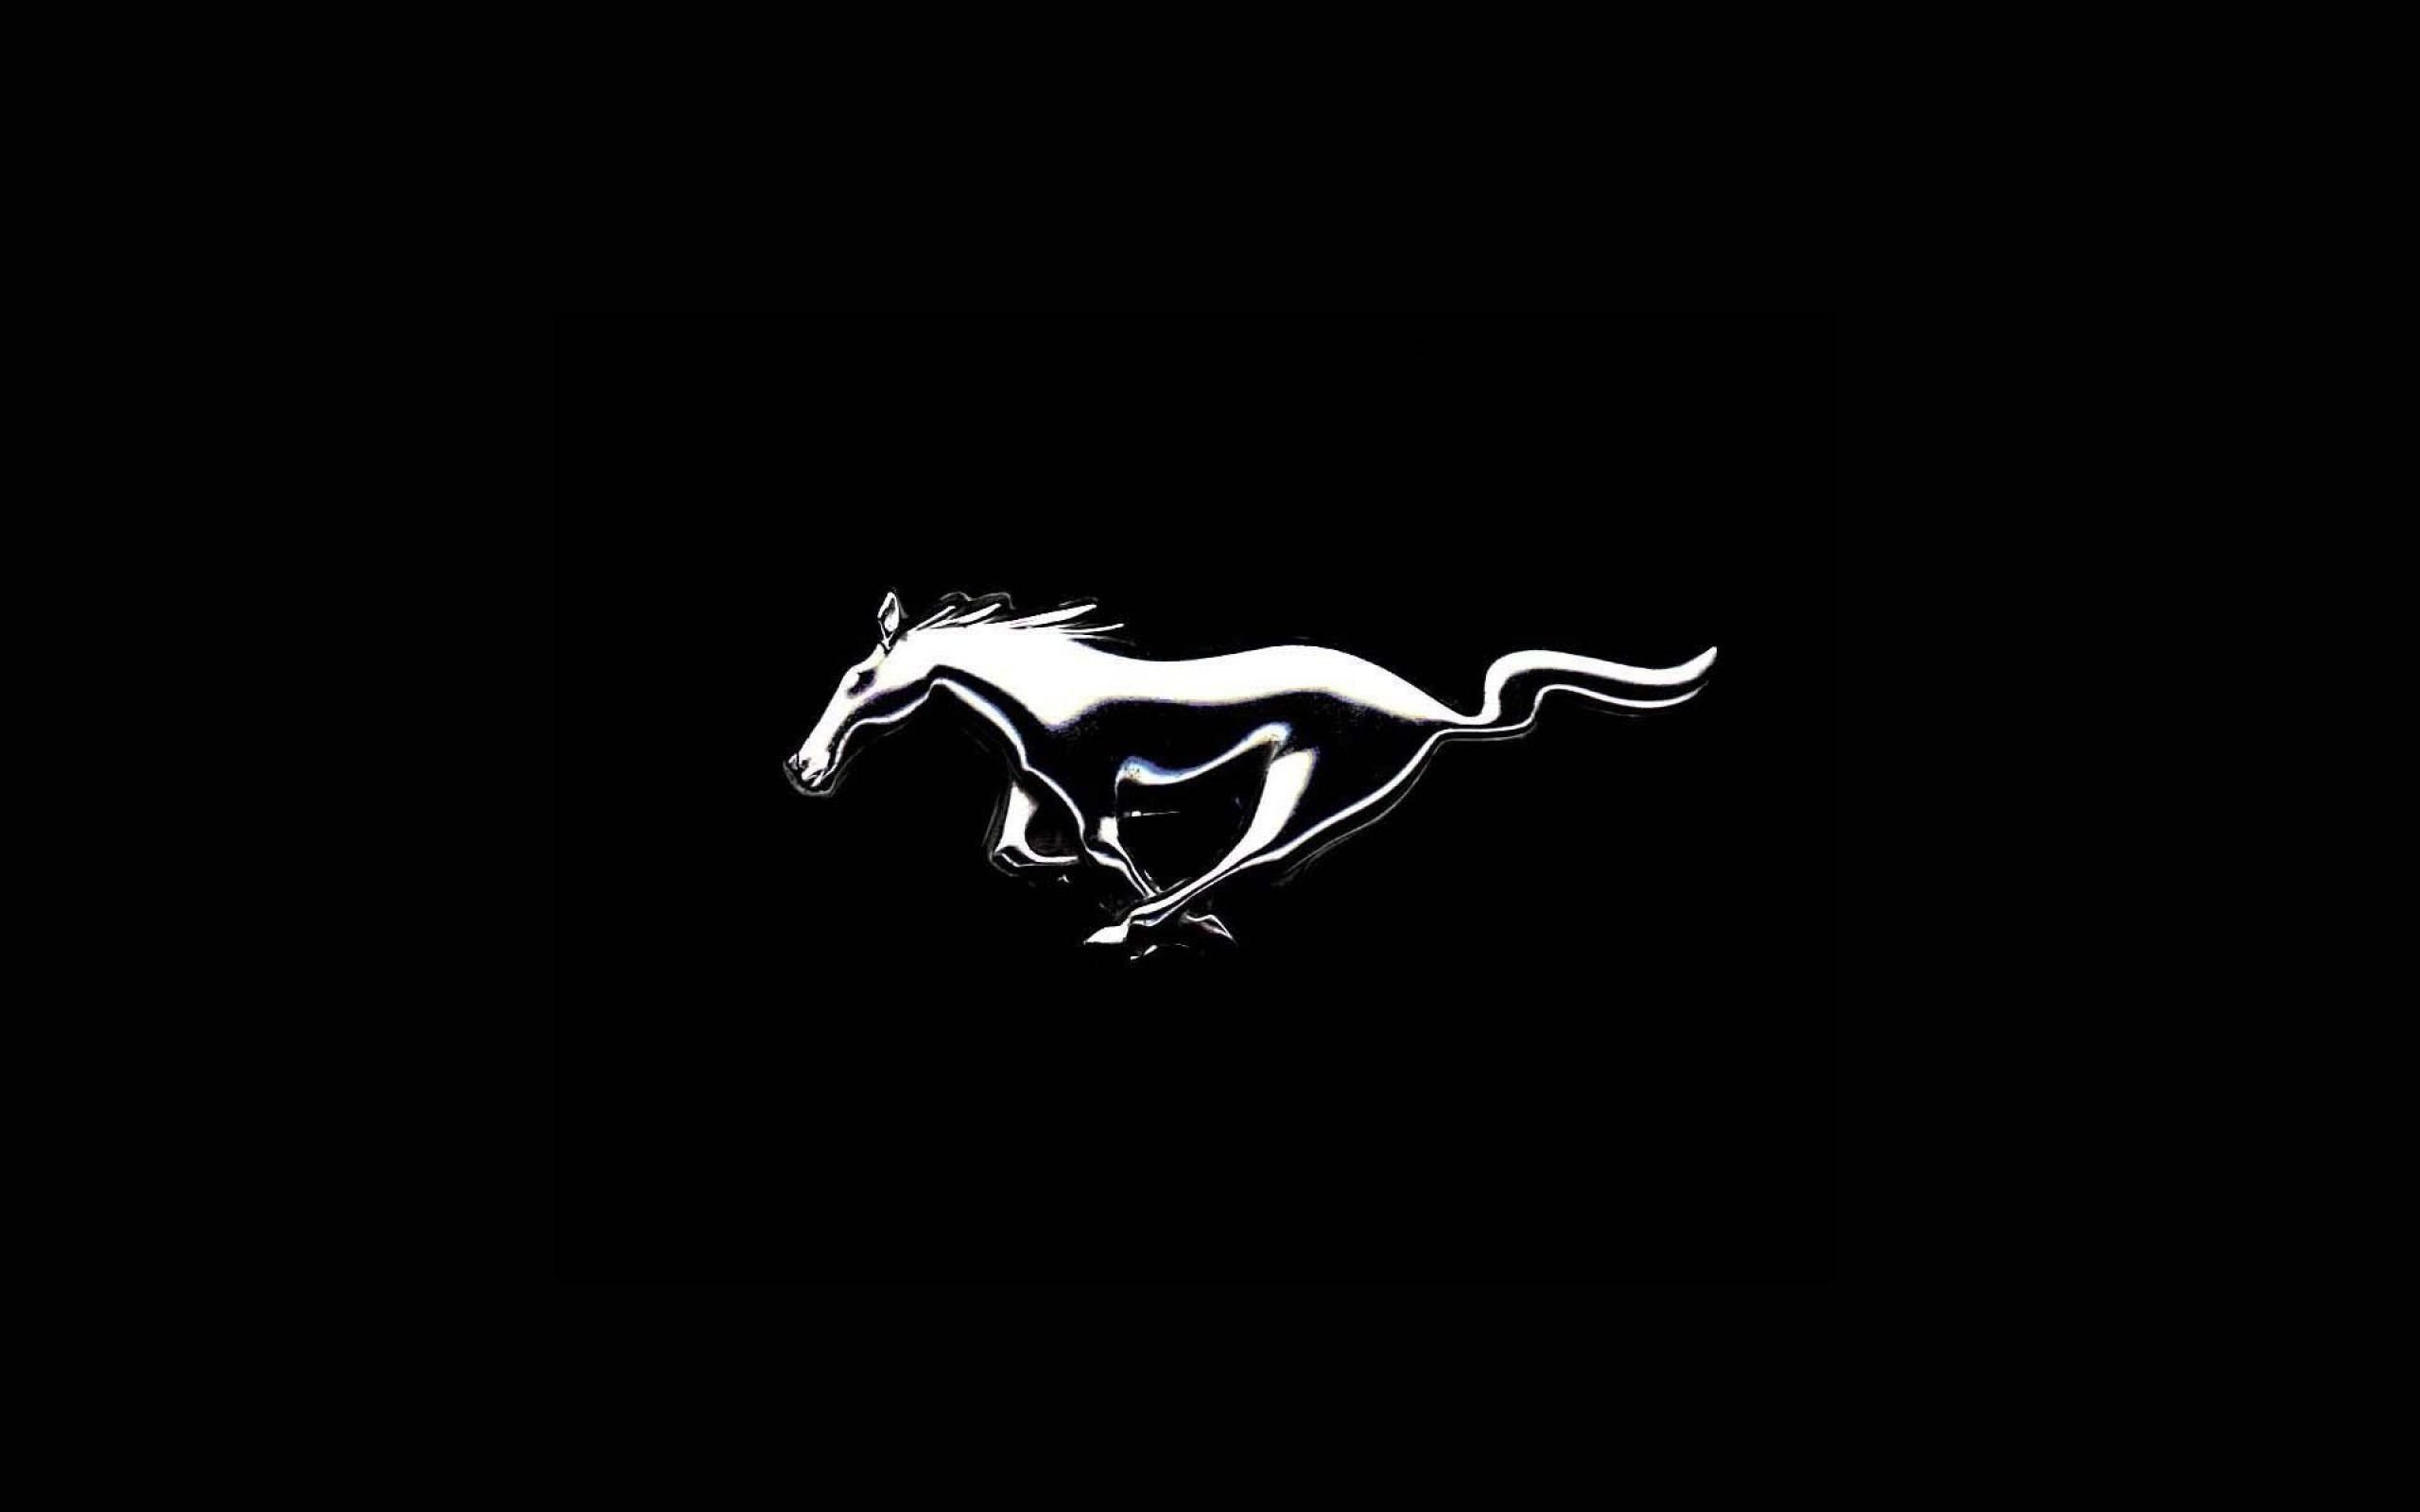 Mustang Logo Wallpaper Free Mustang Logo Background